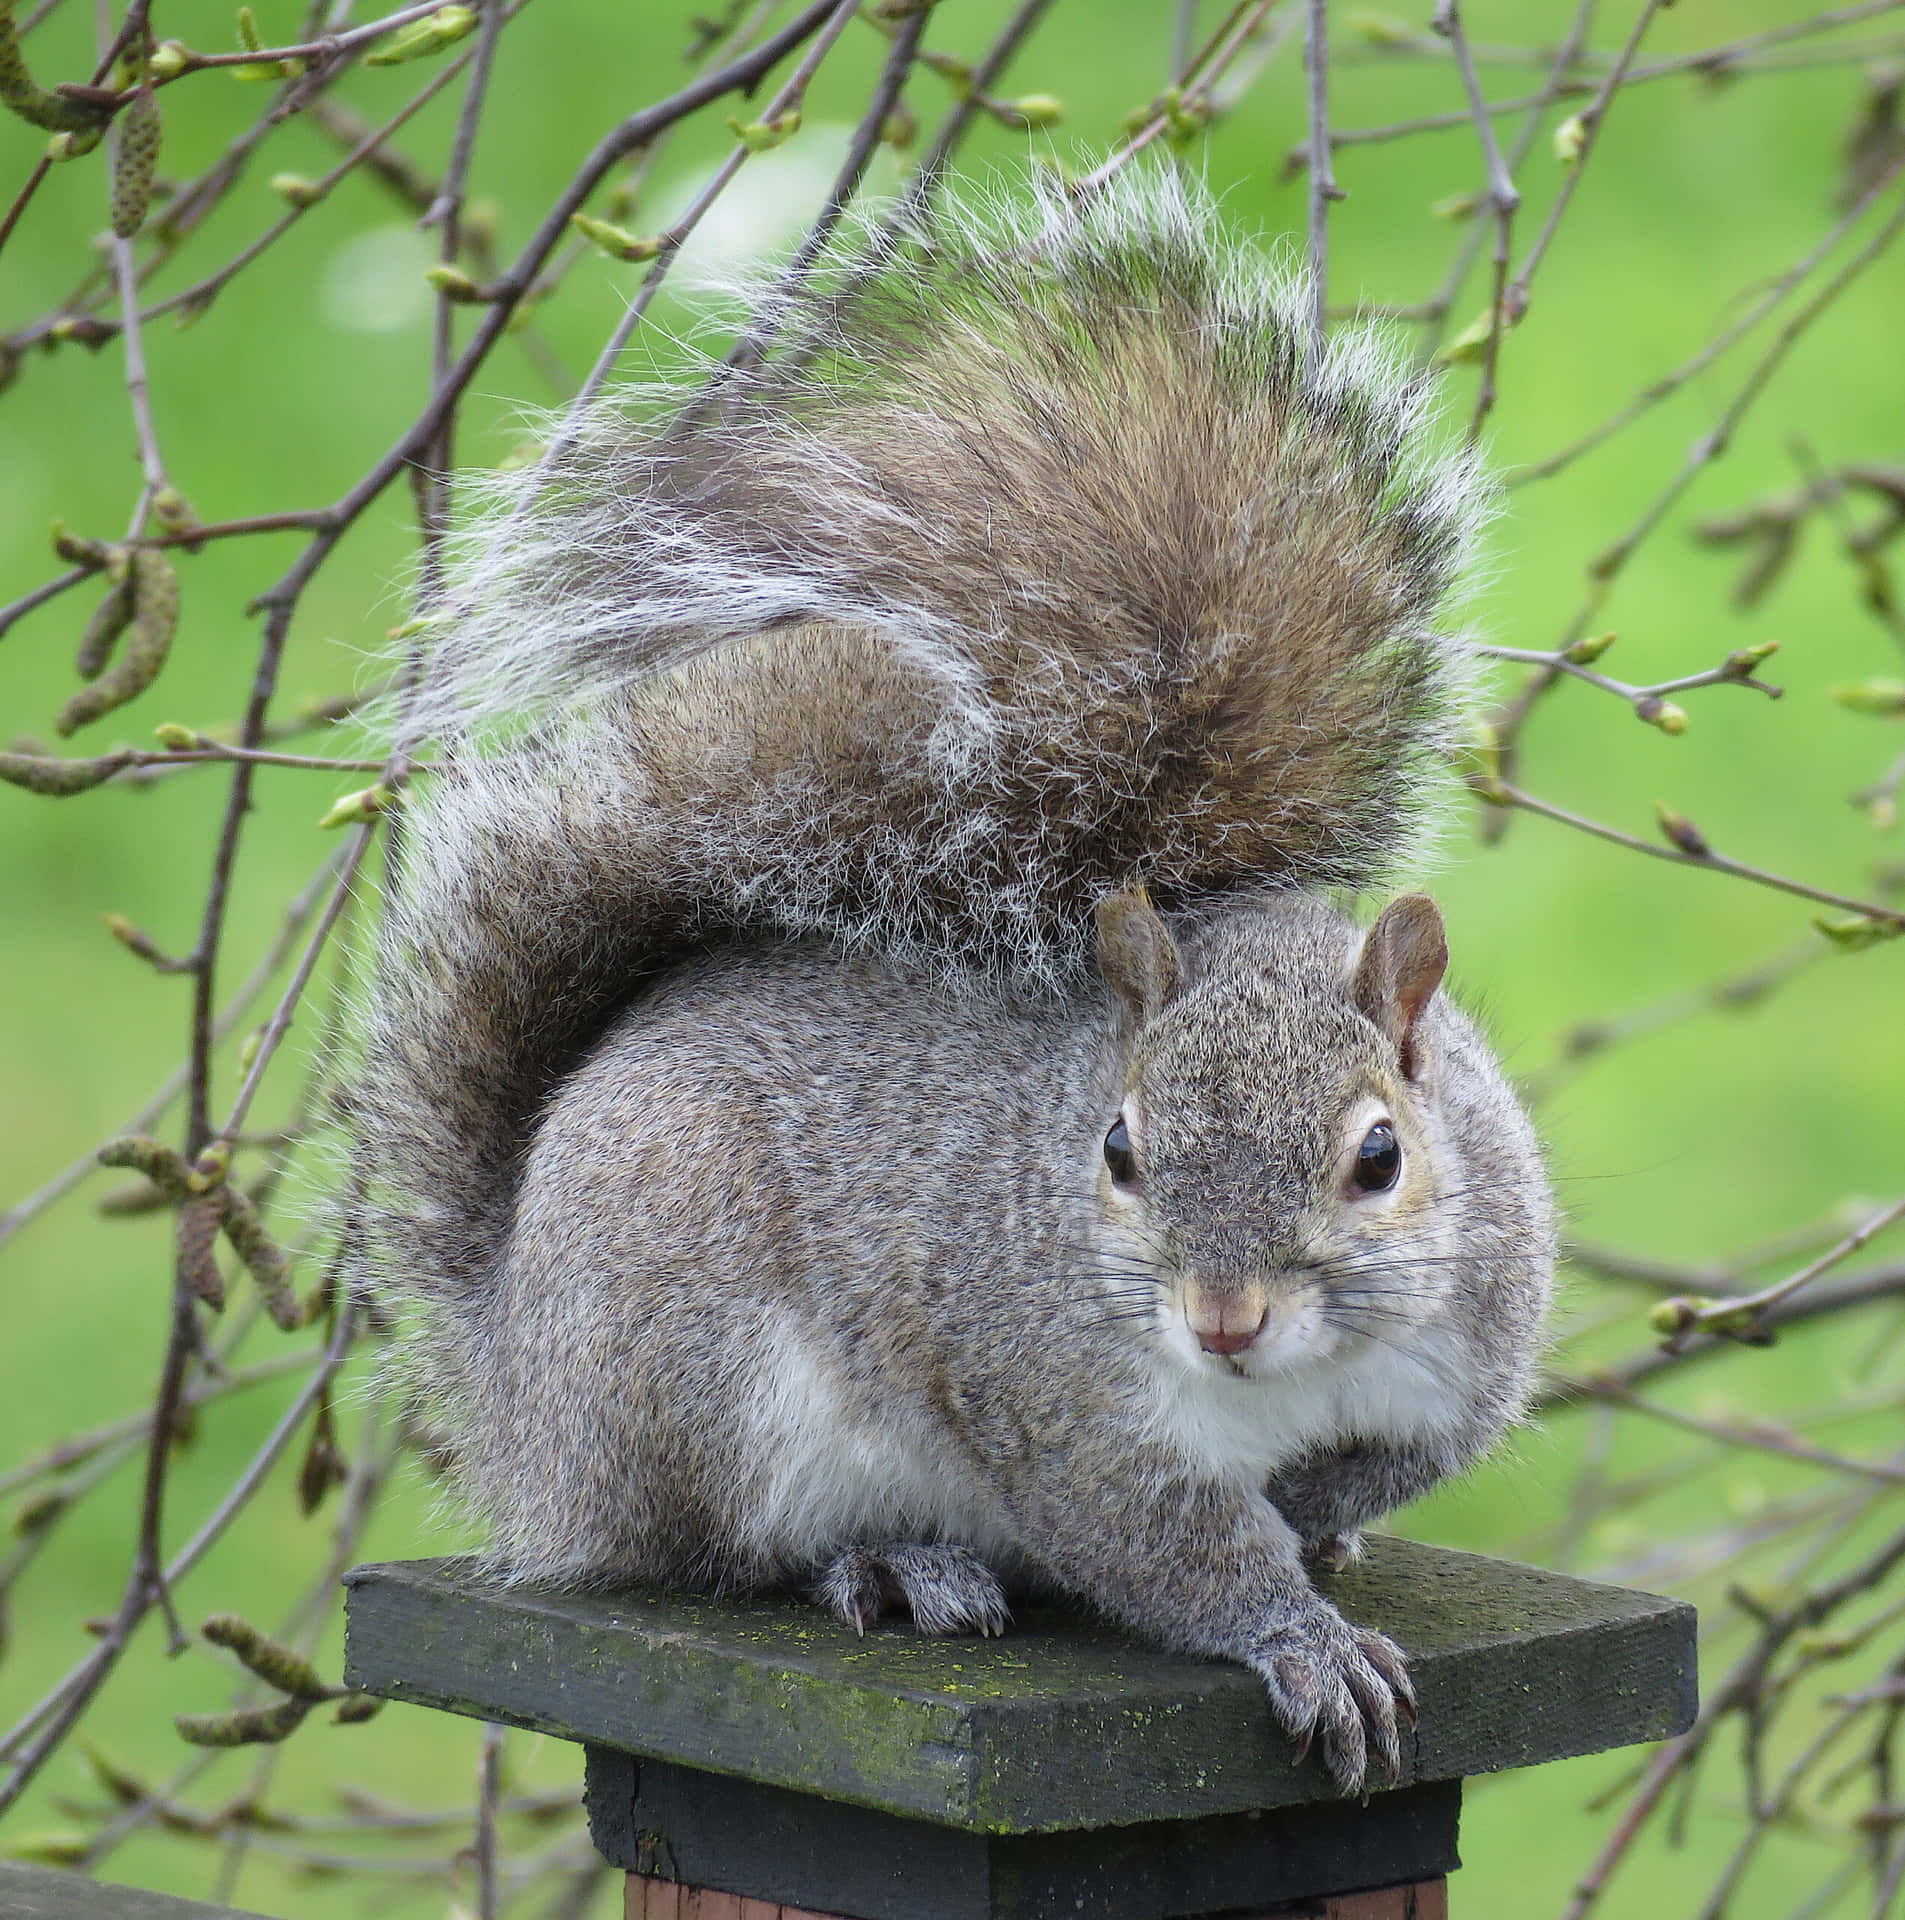 Adorable Squirrel Enjoying A Nut